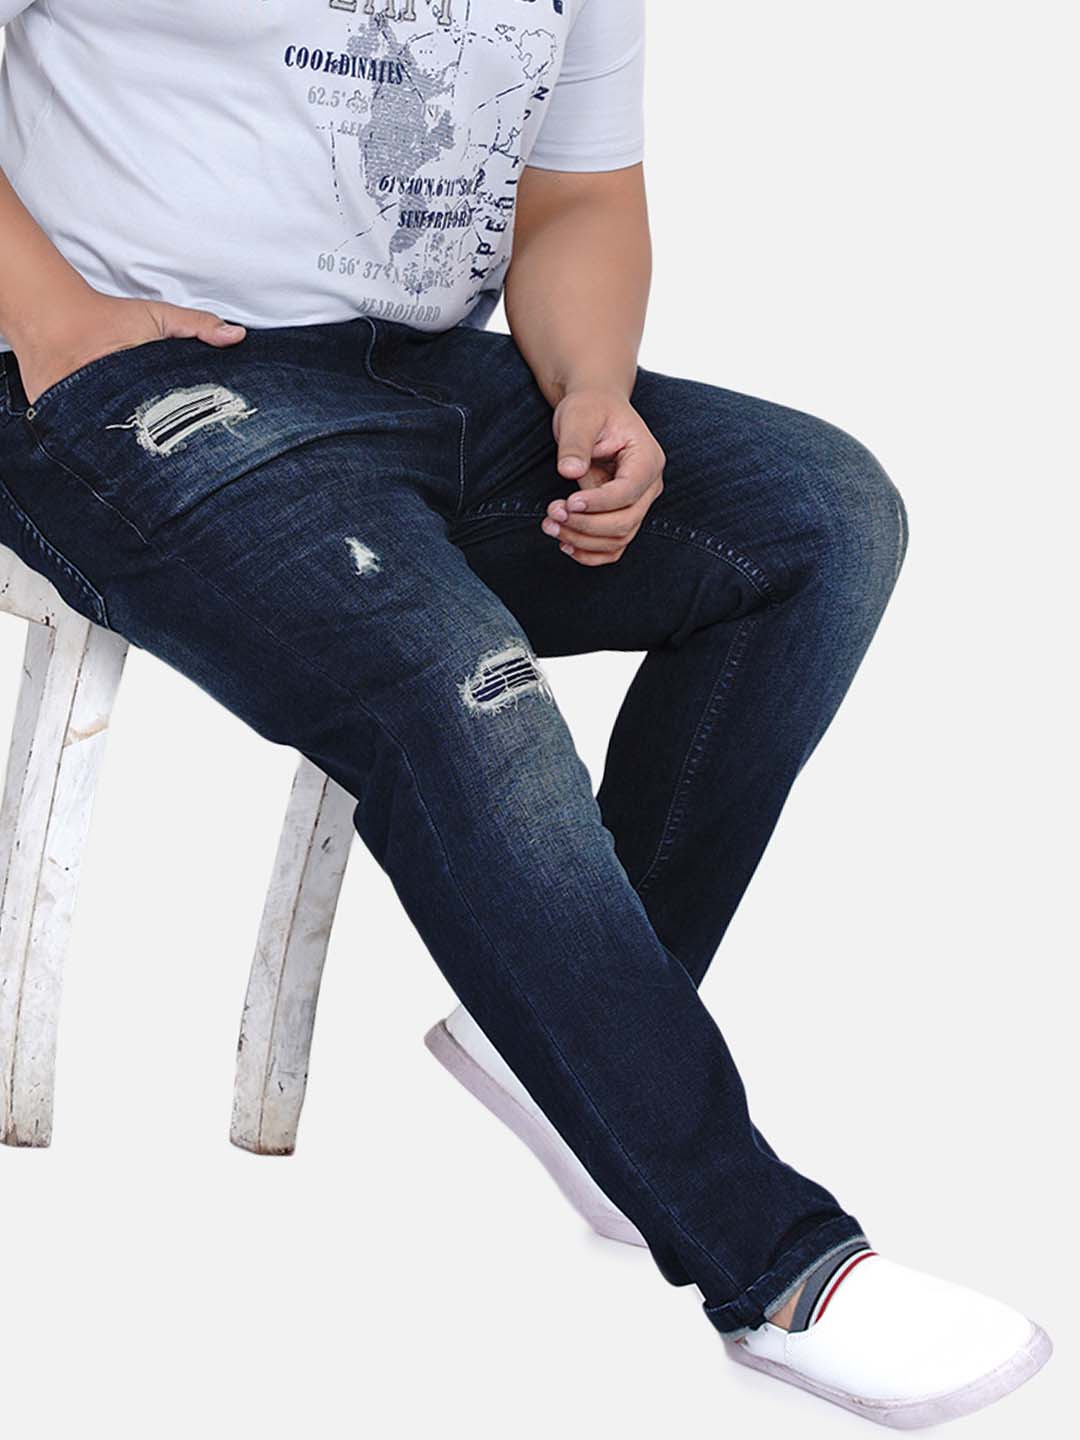 bottomwear/jeans/JPJ6030/jpj6030-1.jpg